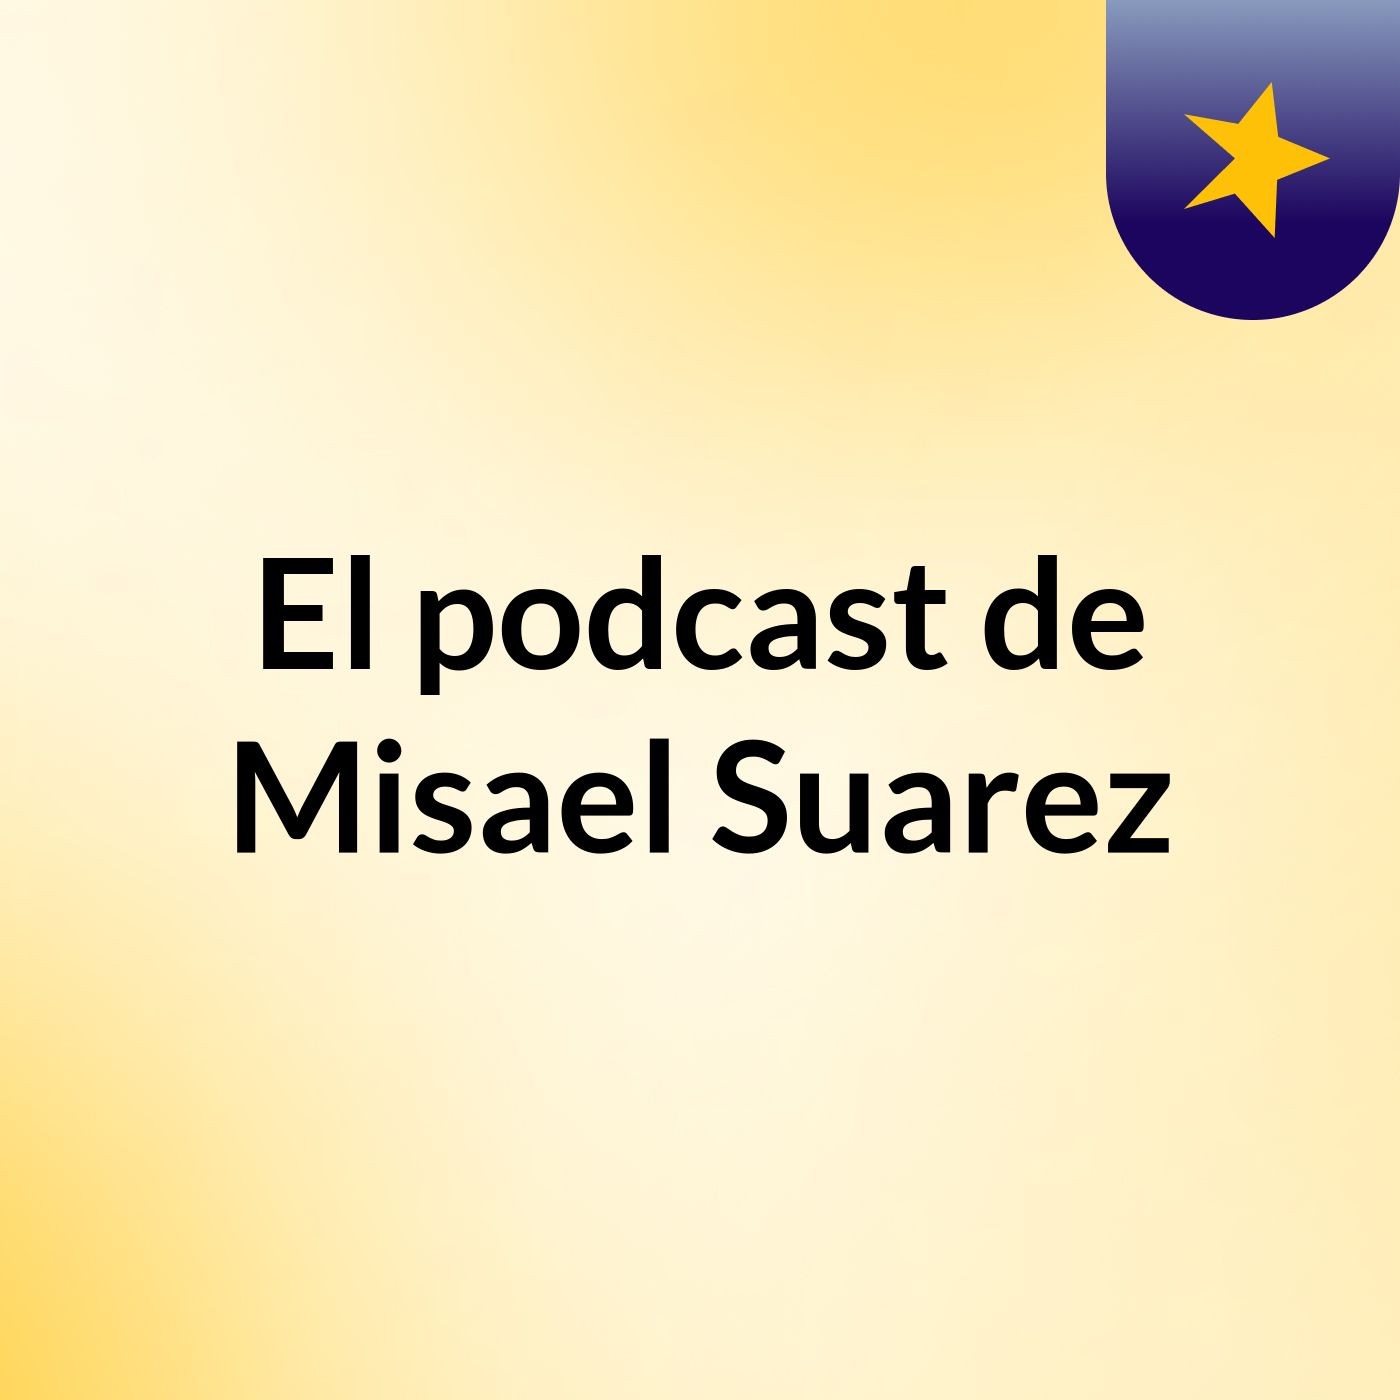 El podcast de Misael Suarez